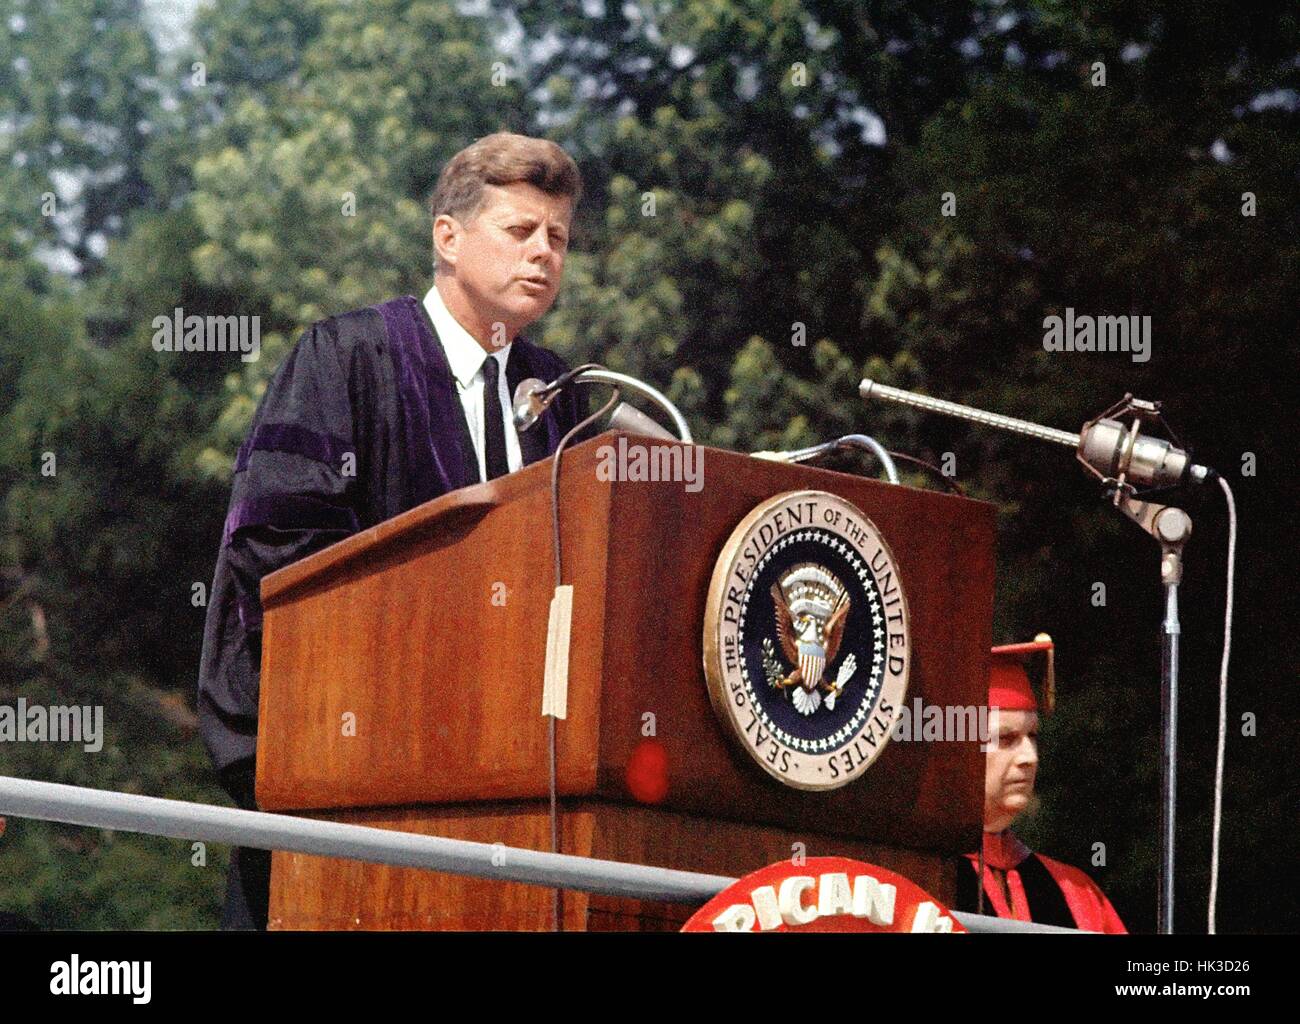 US-Präsident John F. Kennedy spricht Beginn der American University in Washington, D.C. am 10. Juni 1963. Diese Rede ist bekannt als Kennedys "Pax Americana" Rede, wo er seine Vision für den Frieden in der Welt beschrieben. Stockfoto